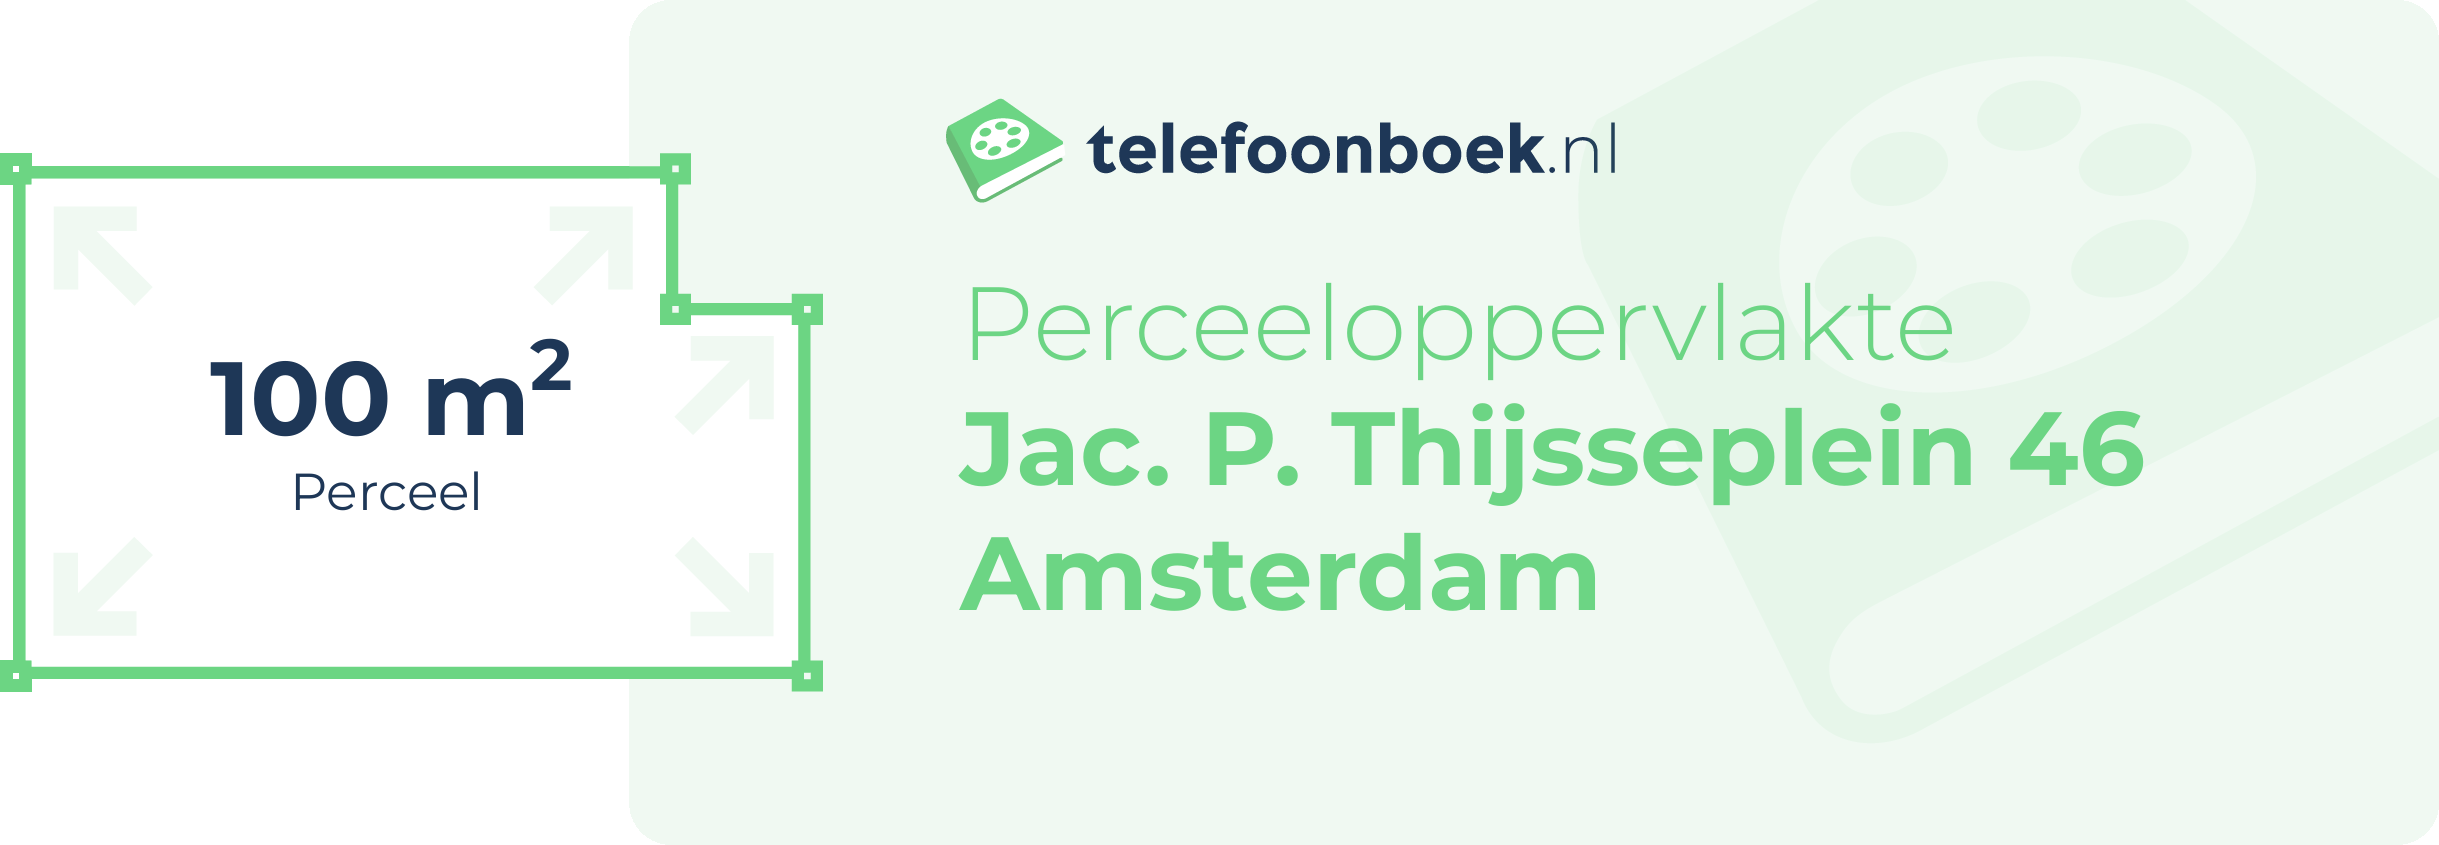 Perceeloppervlakte Jac. P. Thijsseplein 46 Amsterdam